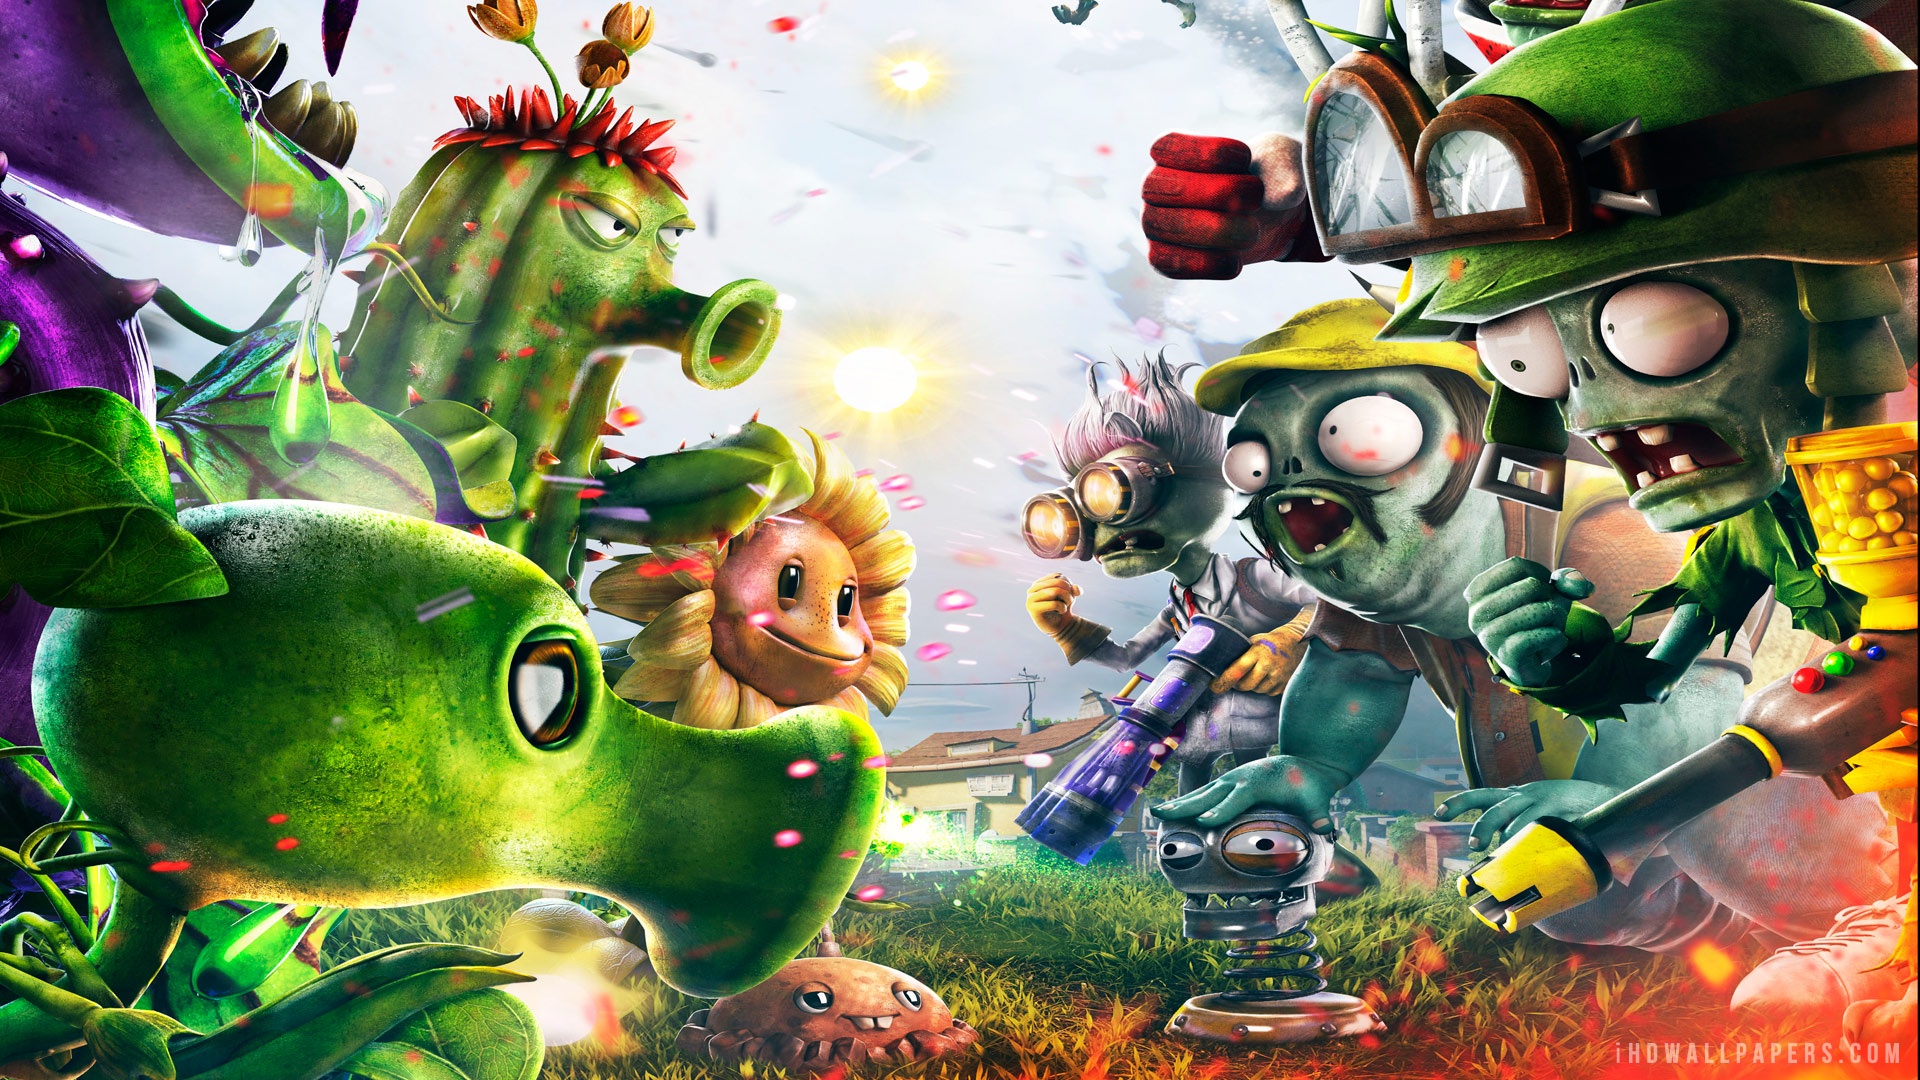 Plants vs zombies garden warfare 2 nintendo switch release date